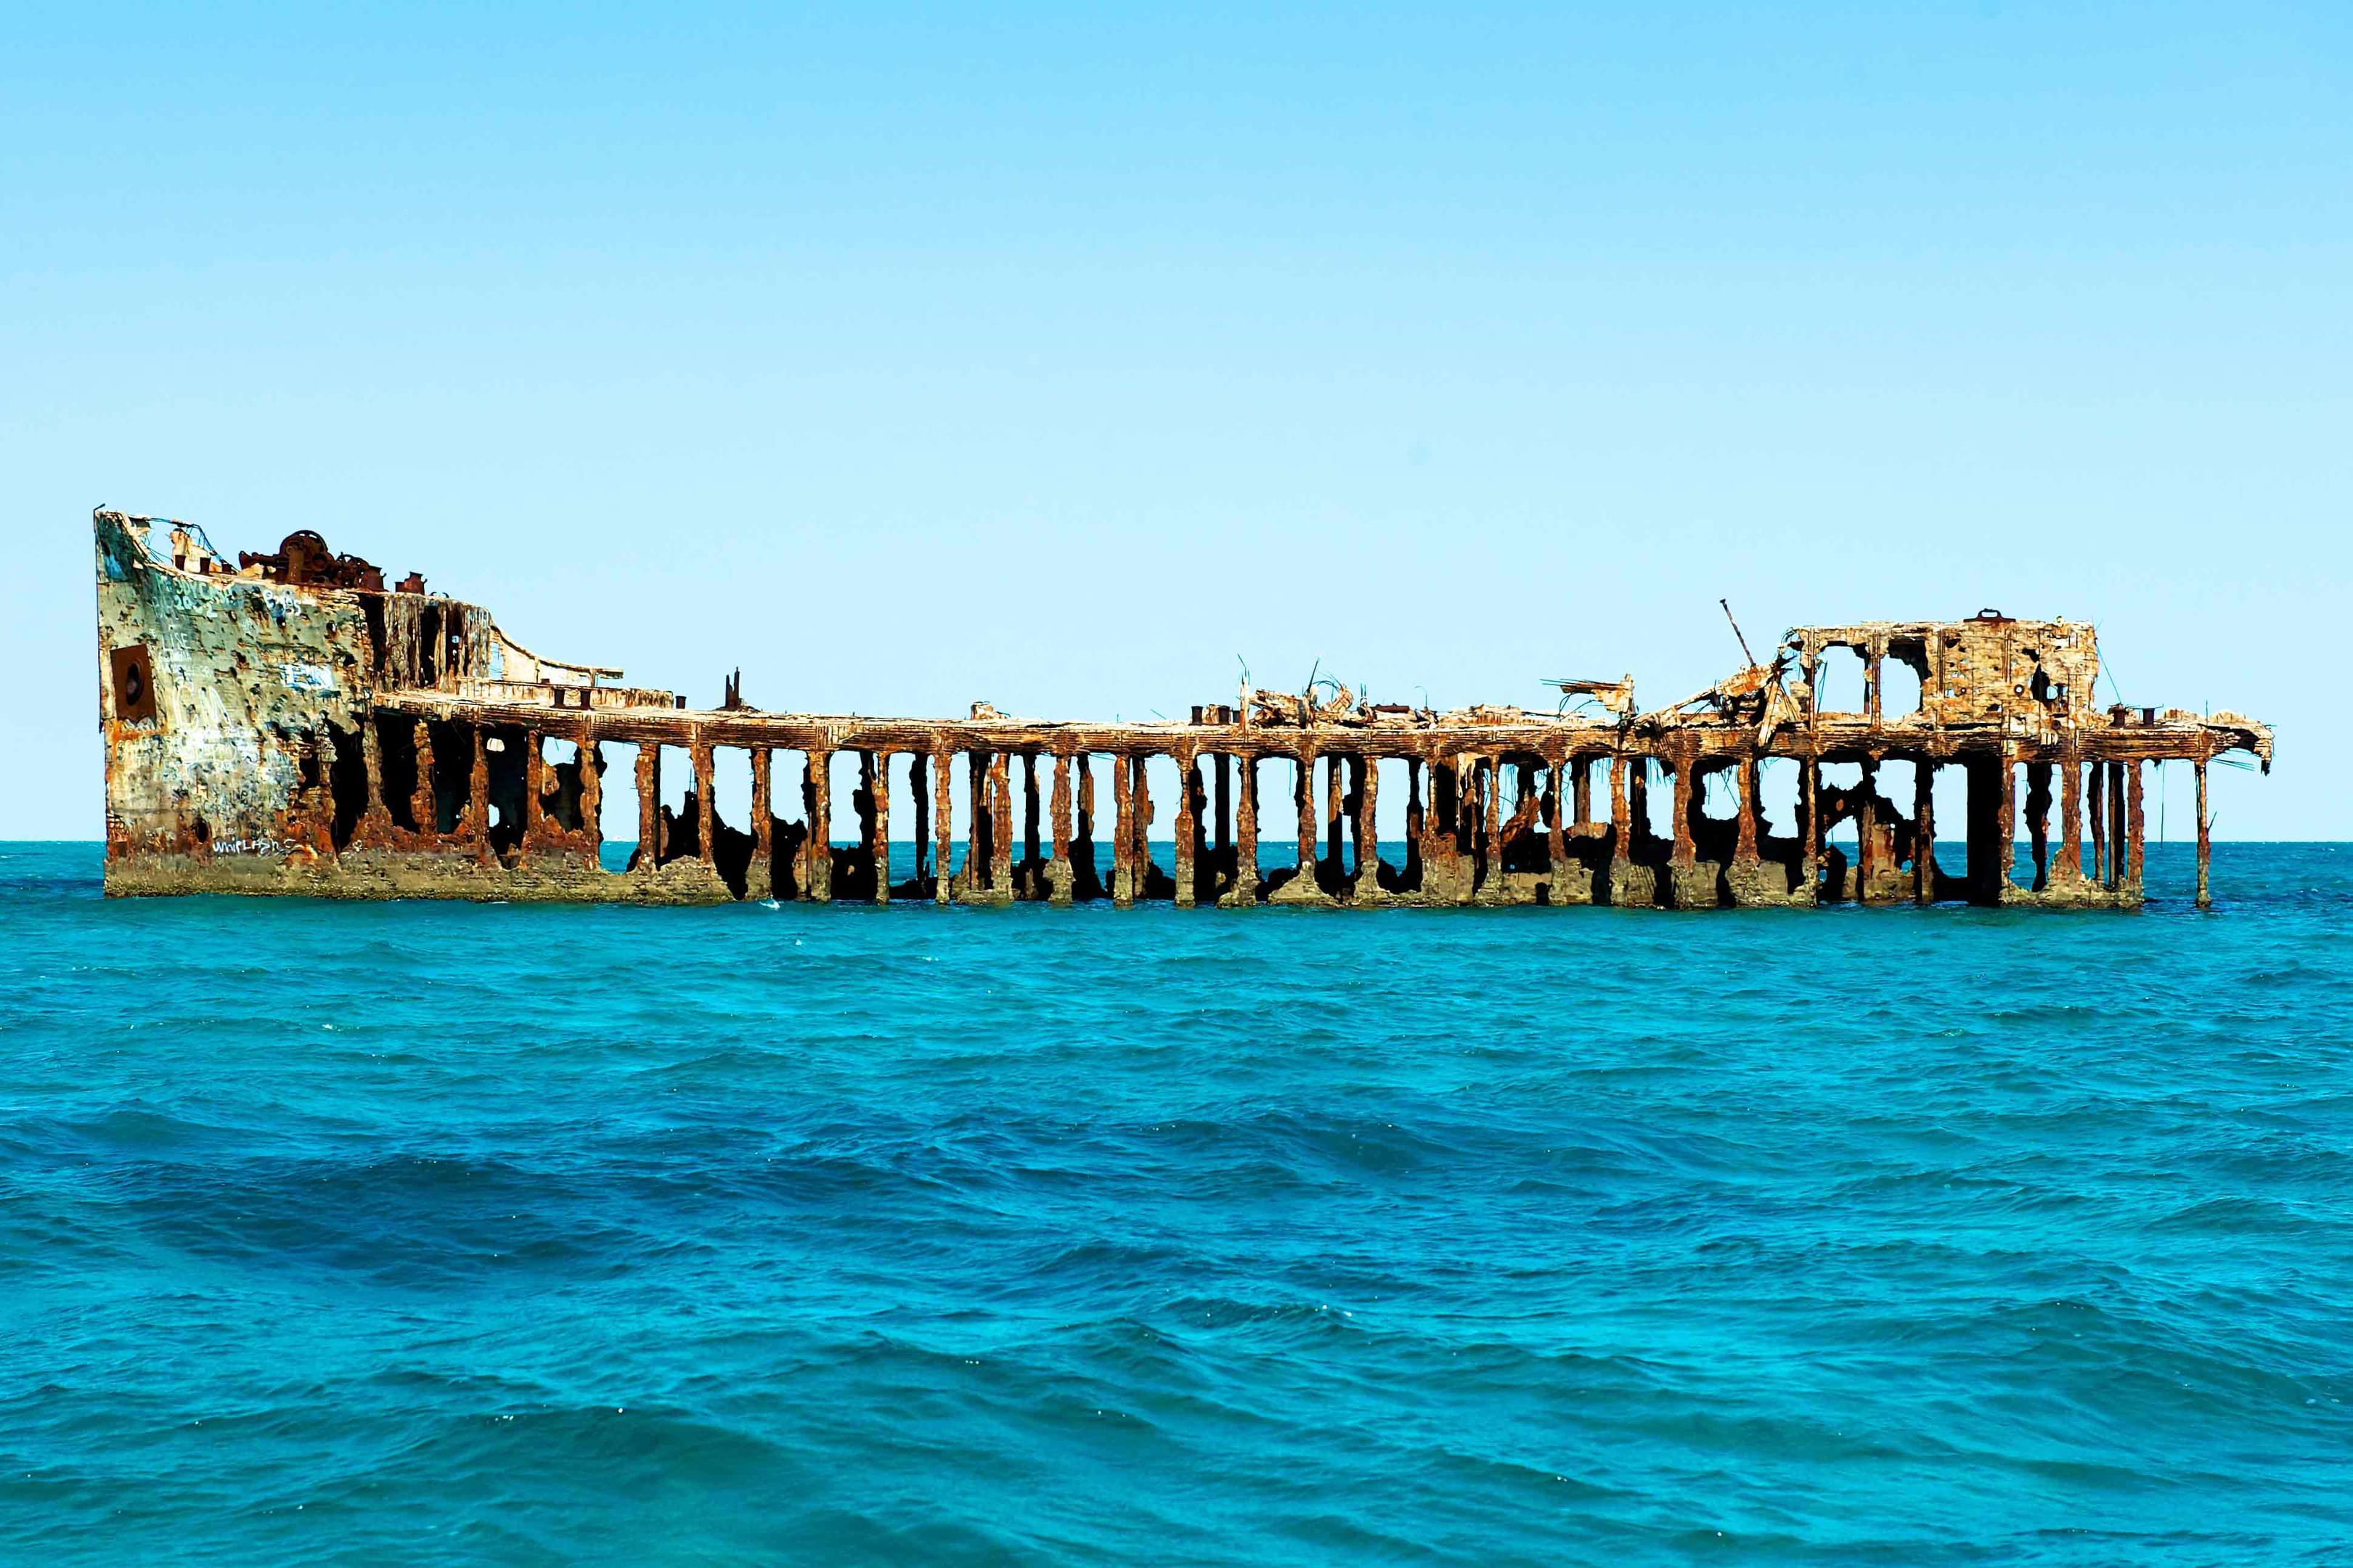 Image of the Sapona Shipwreck shore excursion in Bimini.